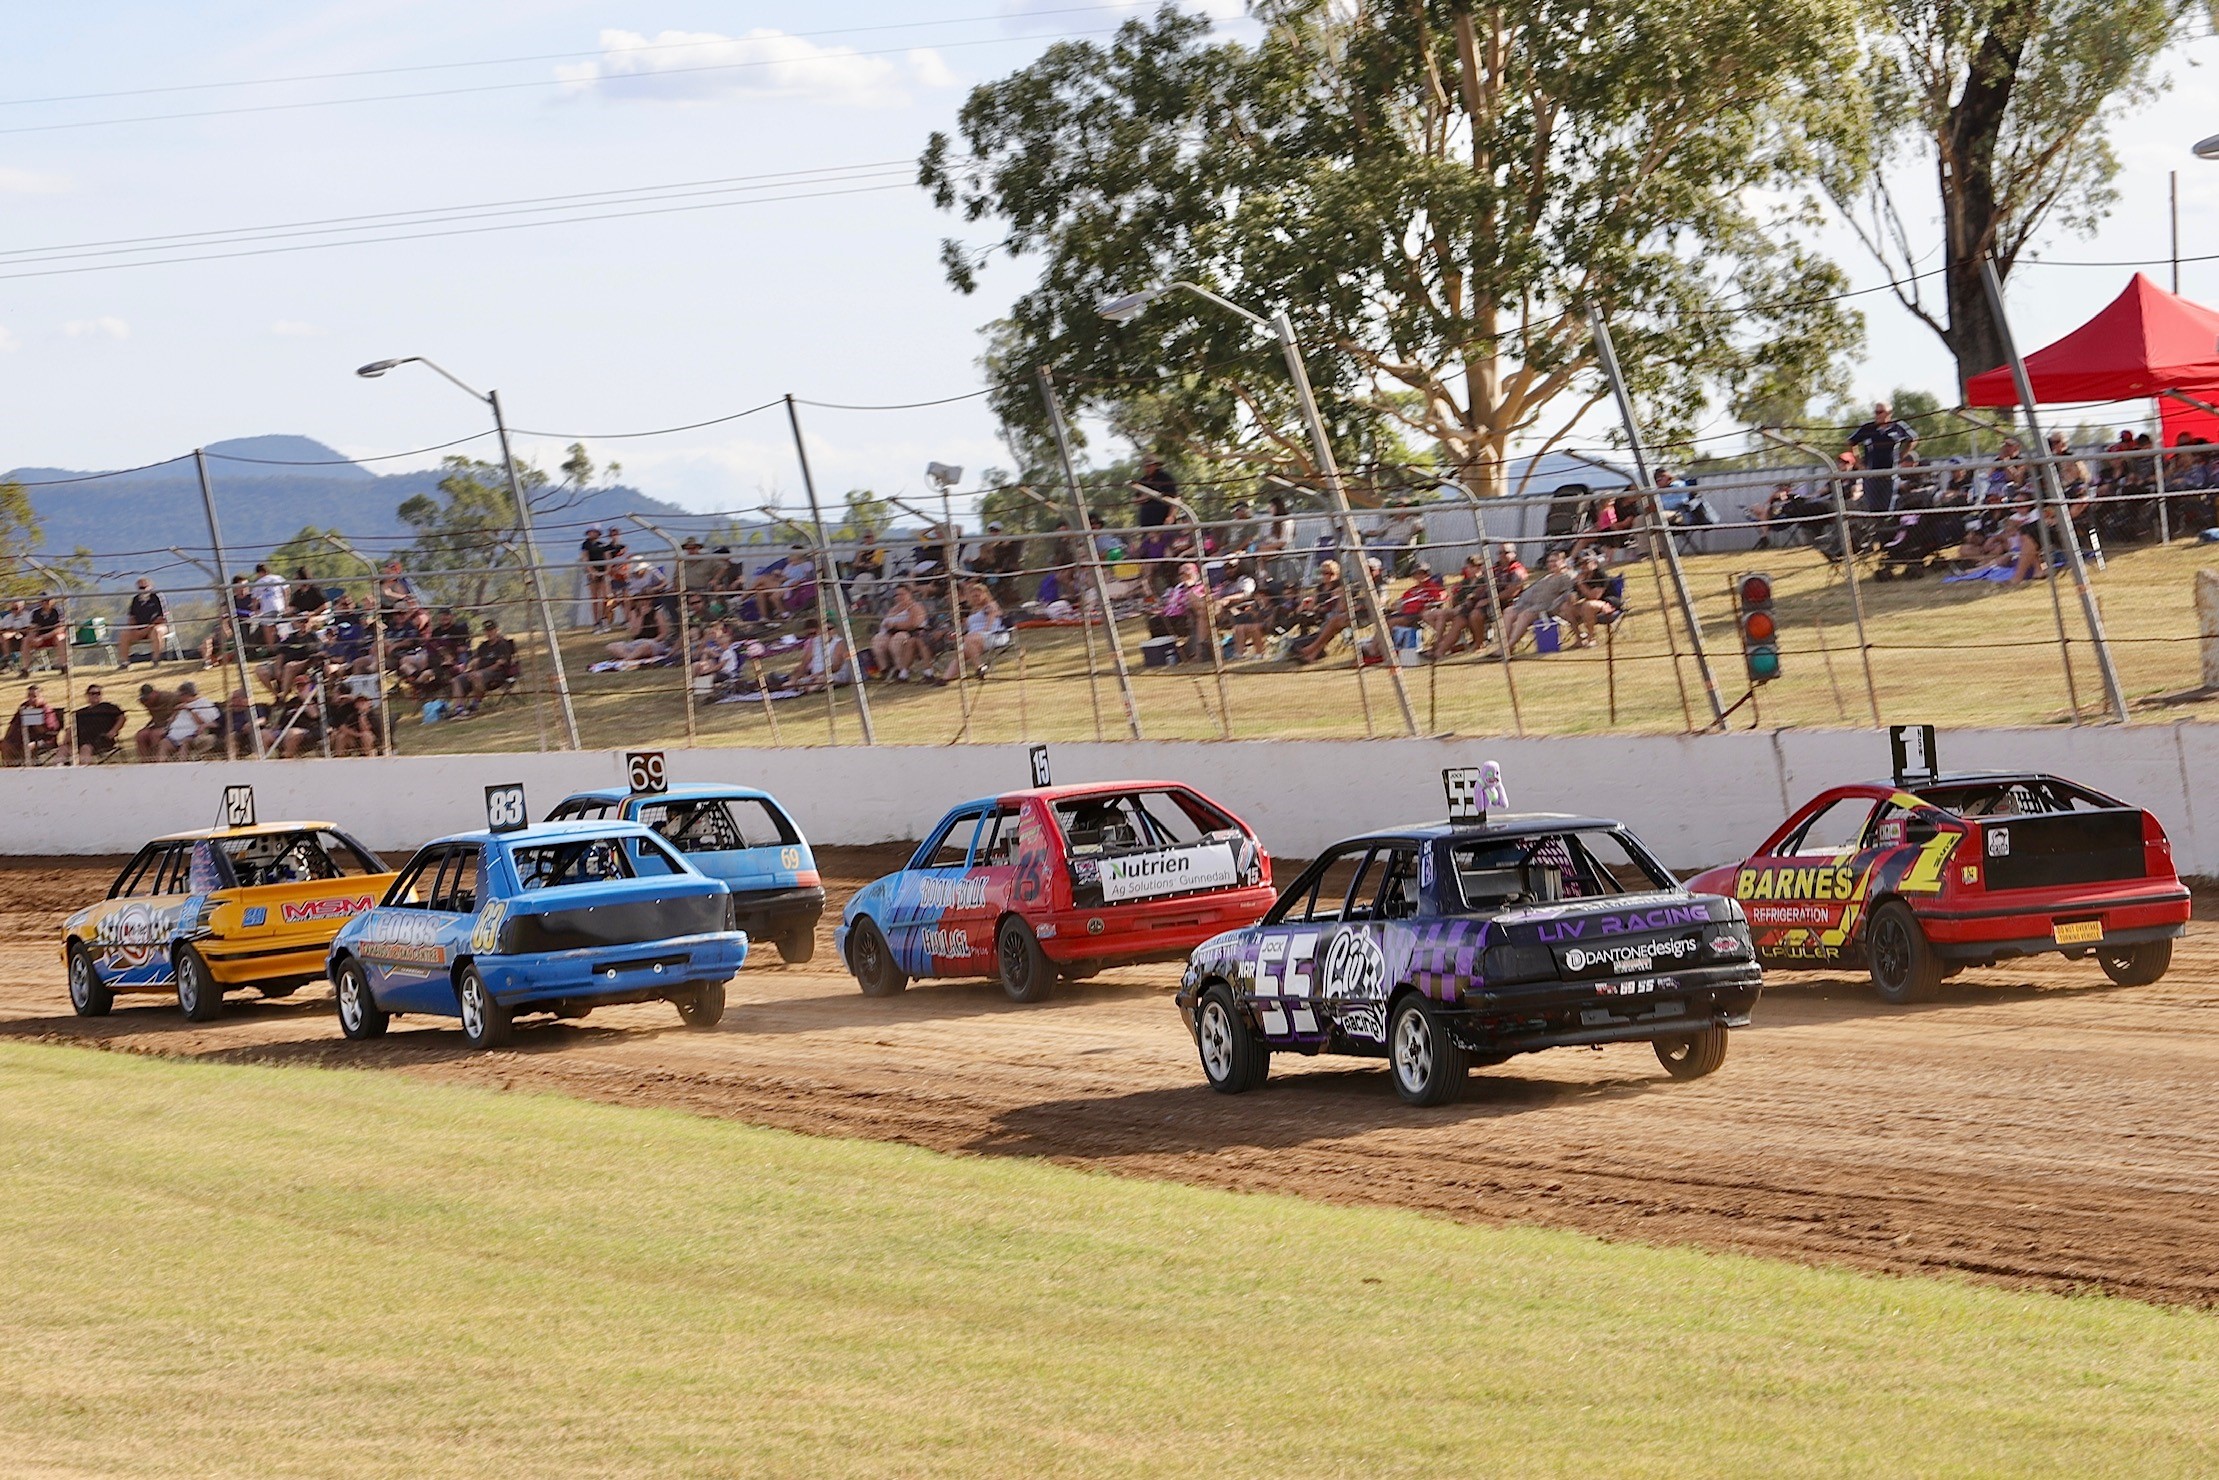 Speedway hosts AMCA NSW title